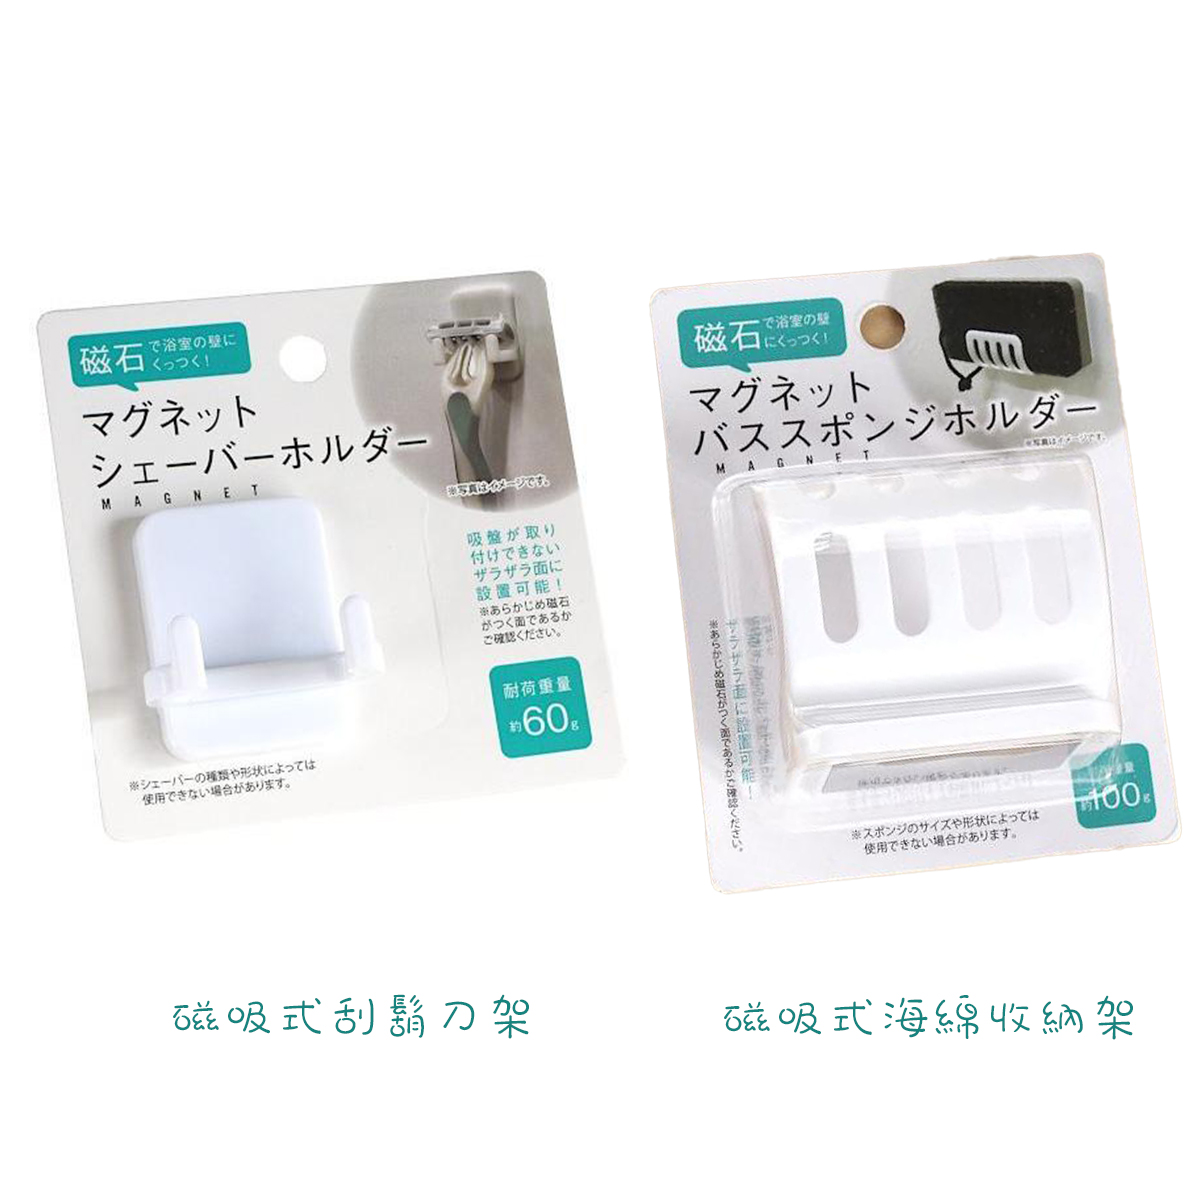 磁吸式海綿收納架&刮鬍刀架-日本監製